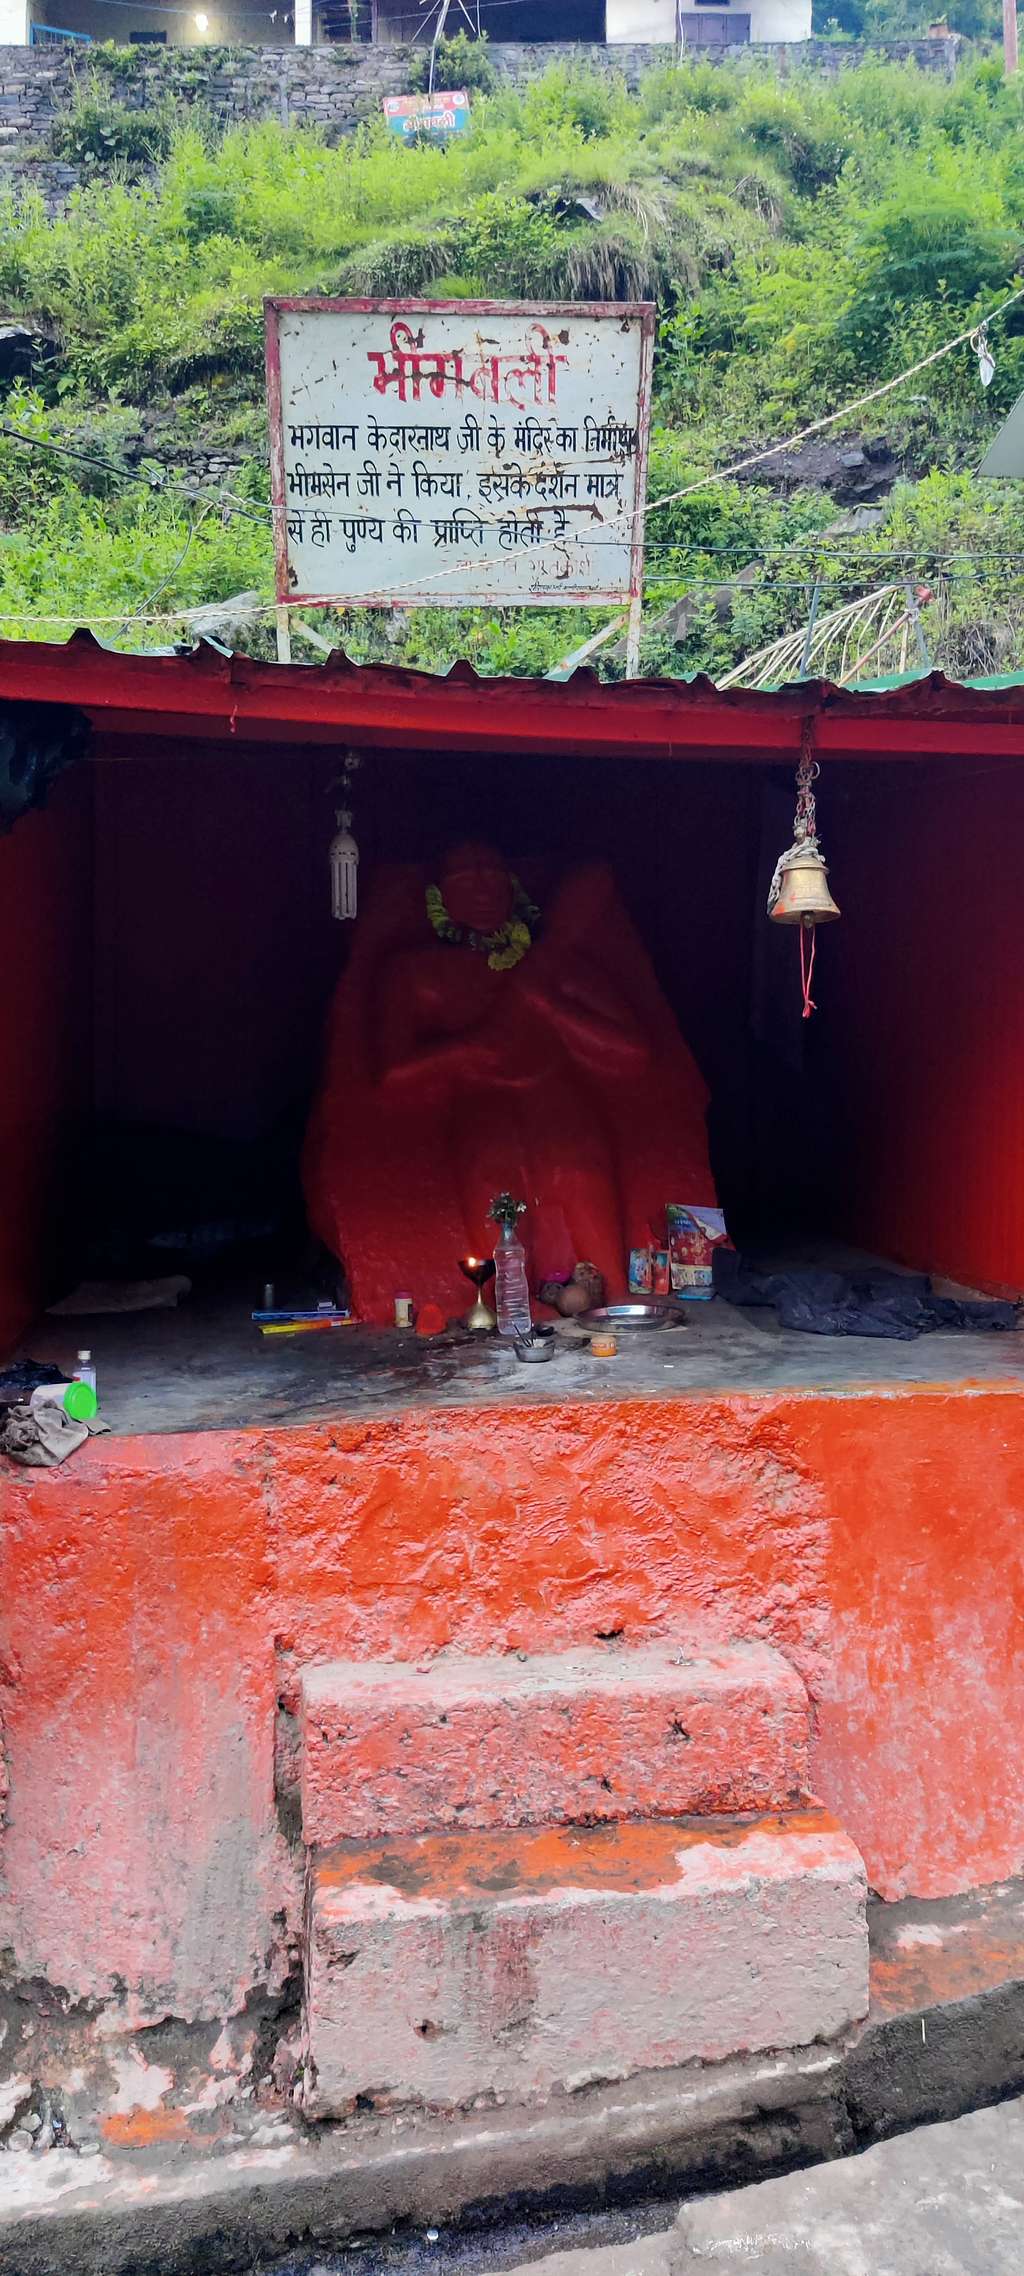 Bheembali temple at camp